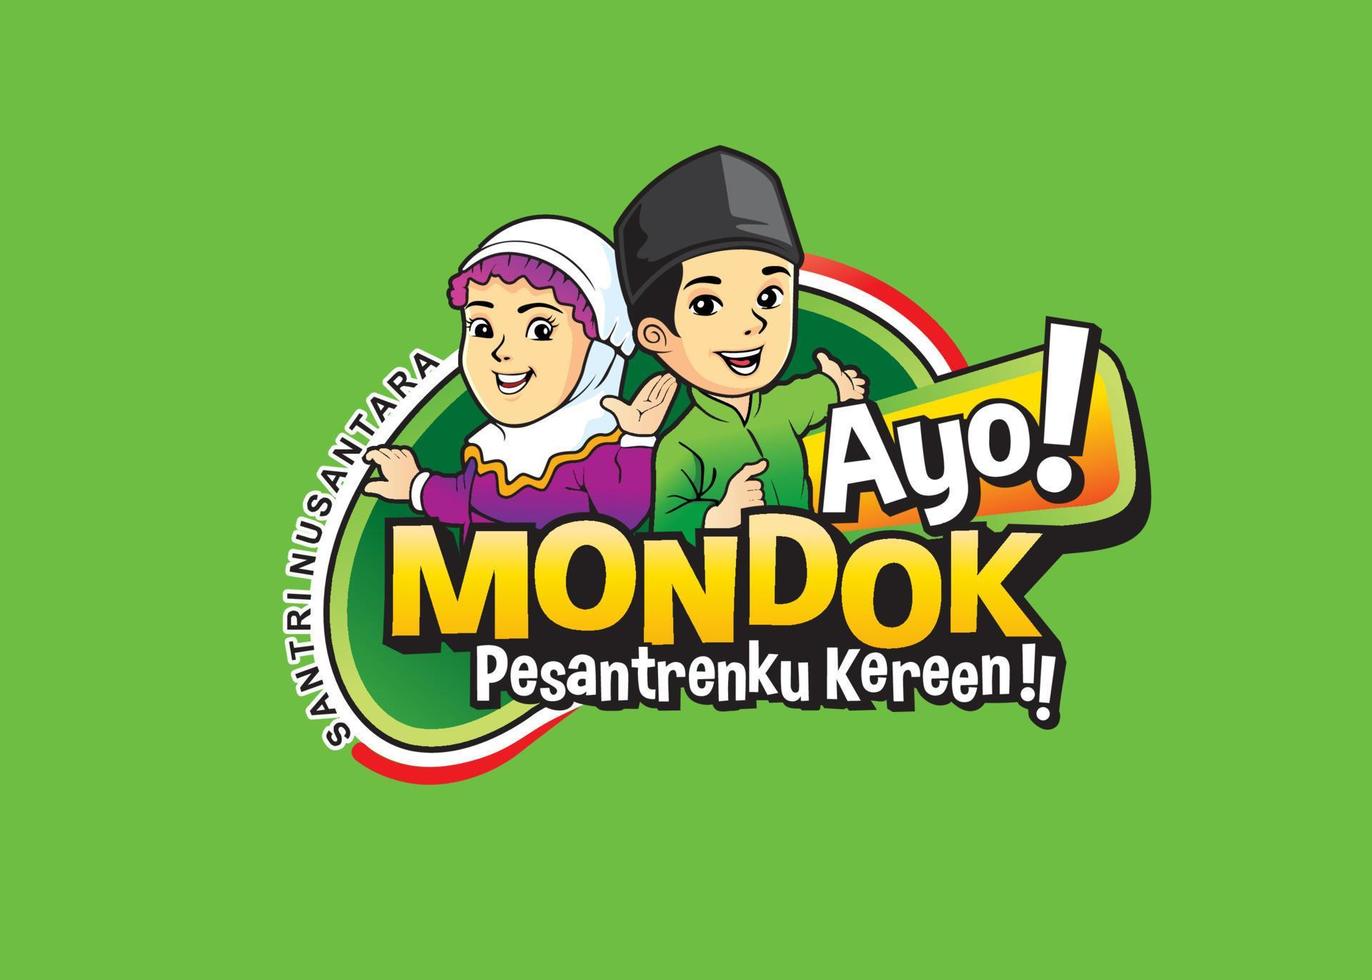 das logo-design mit dem titel ayo mondok ist für islamische internate und während des islamischen studiums vektor